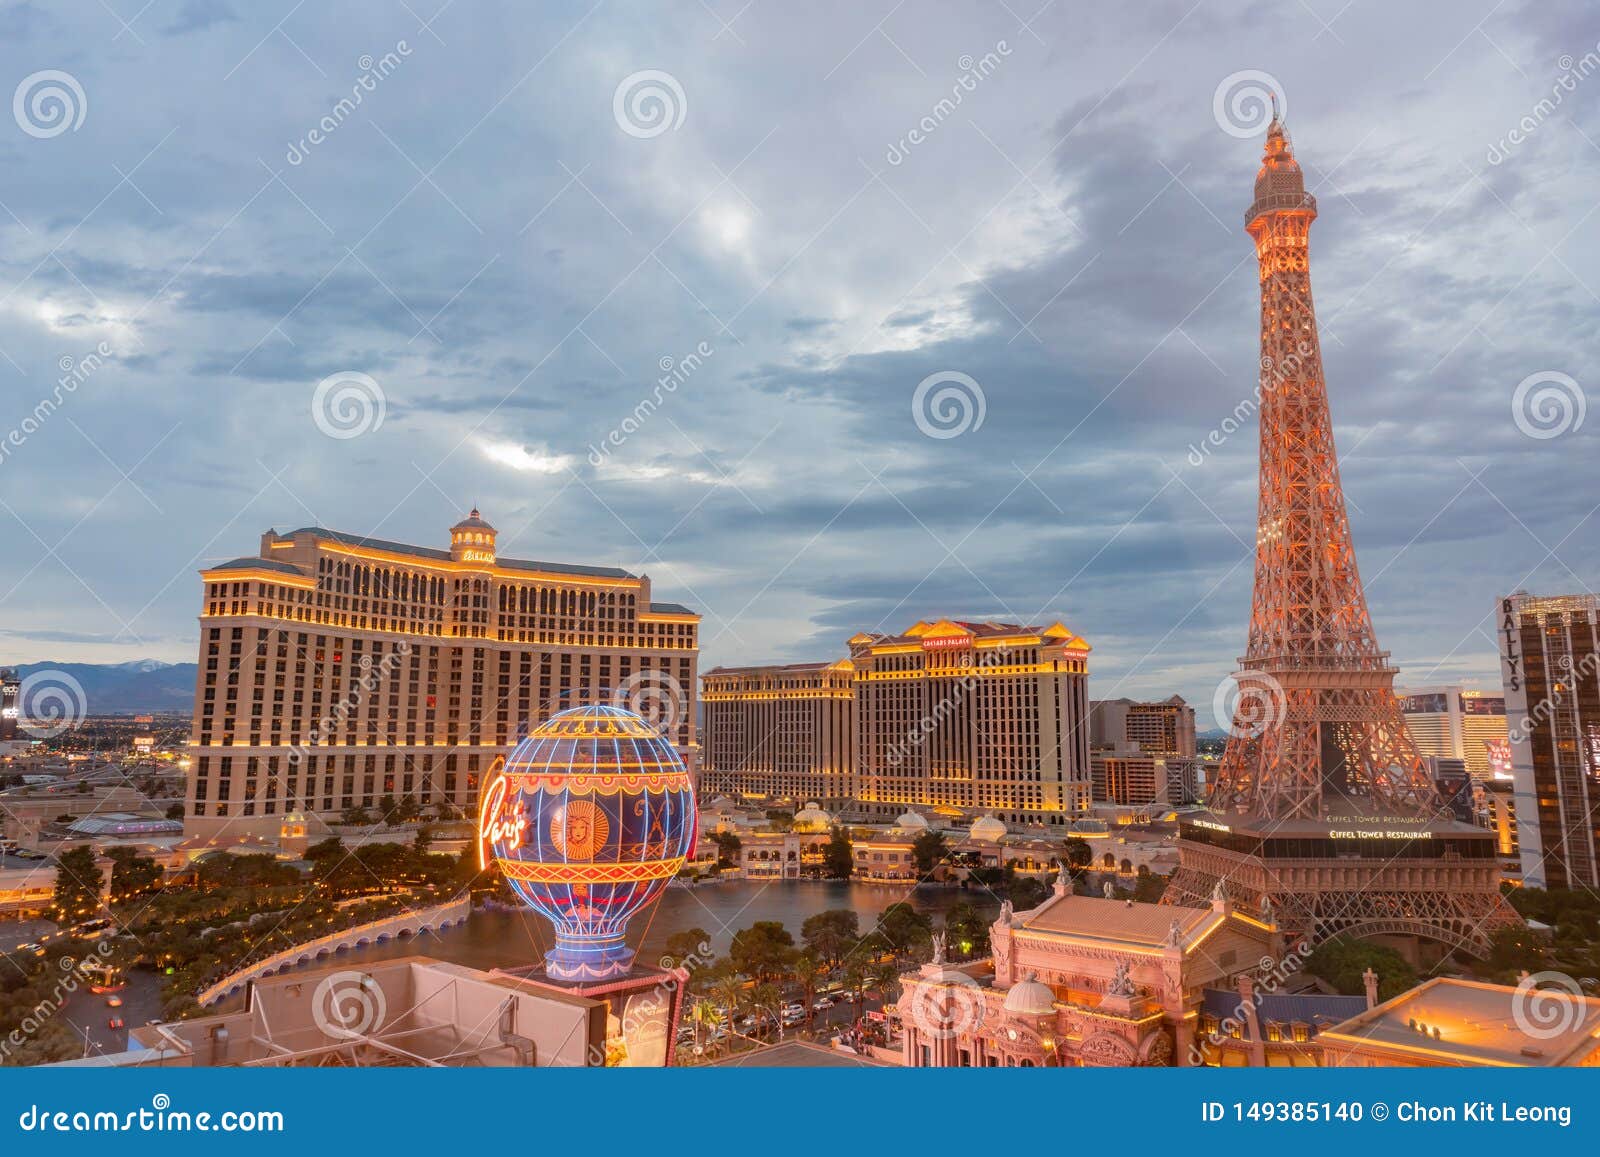 90+ Paris Casino Resort On The Las Vegas Strip Stock Photos